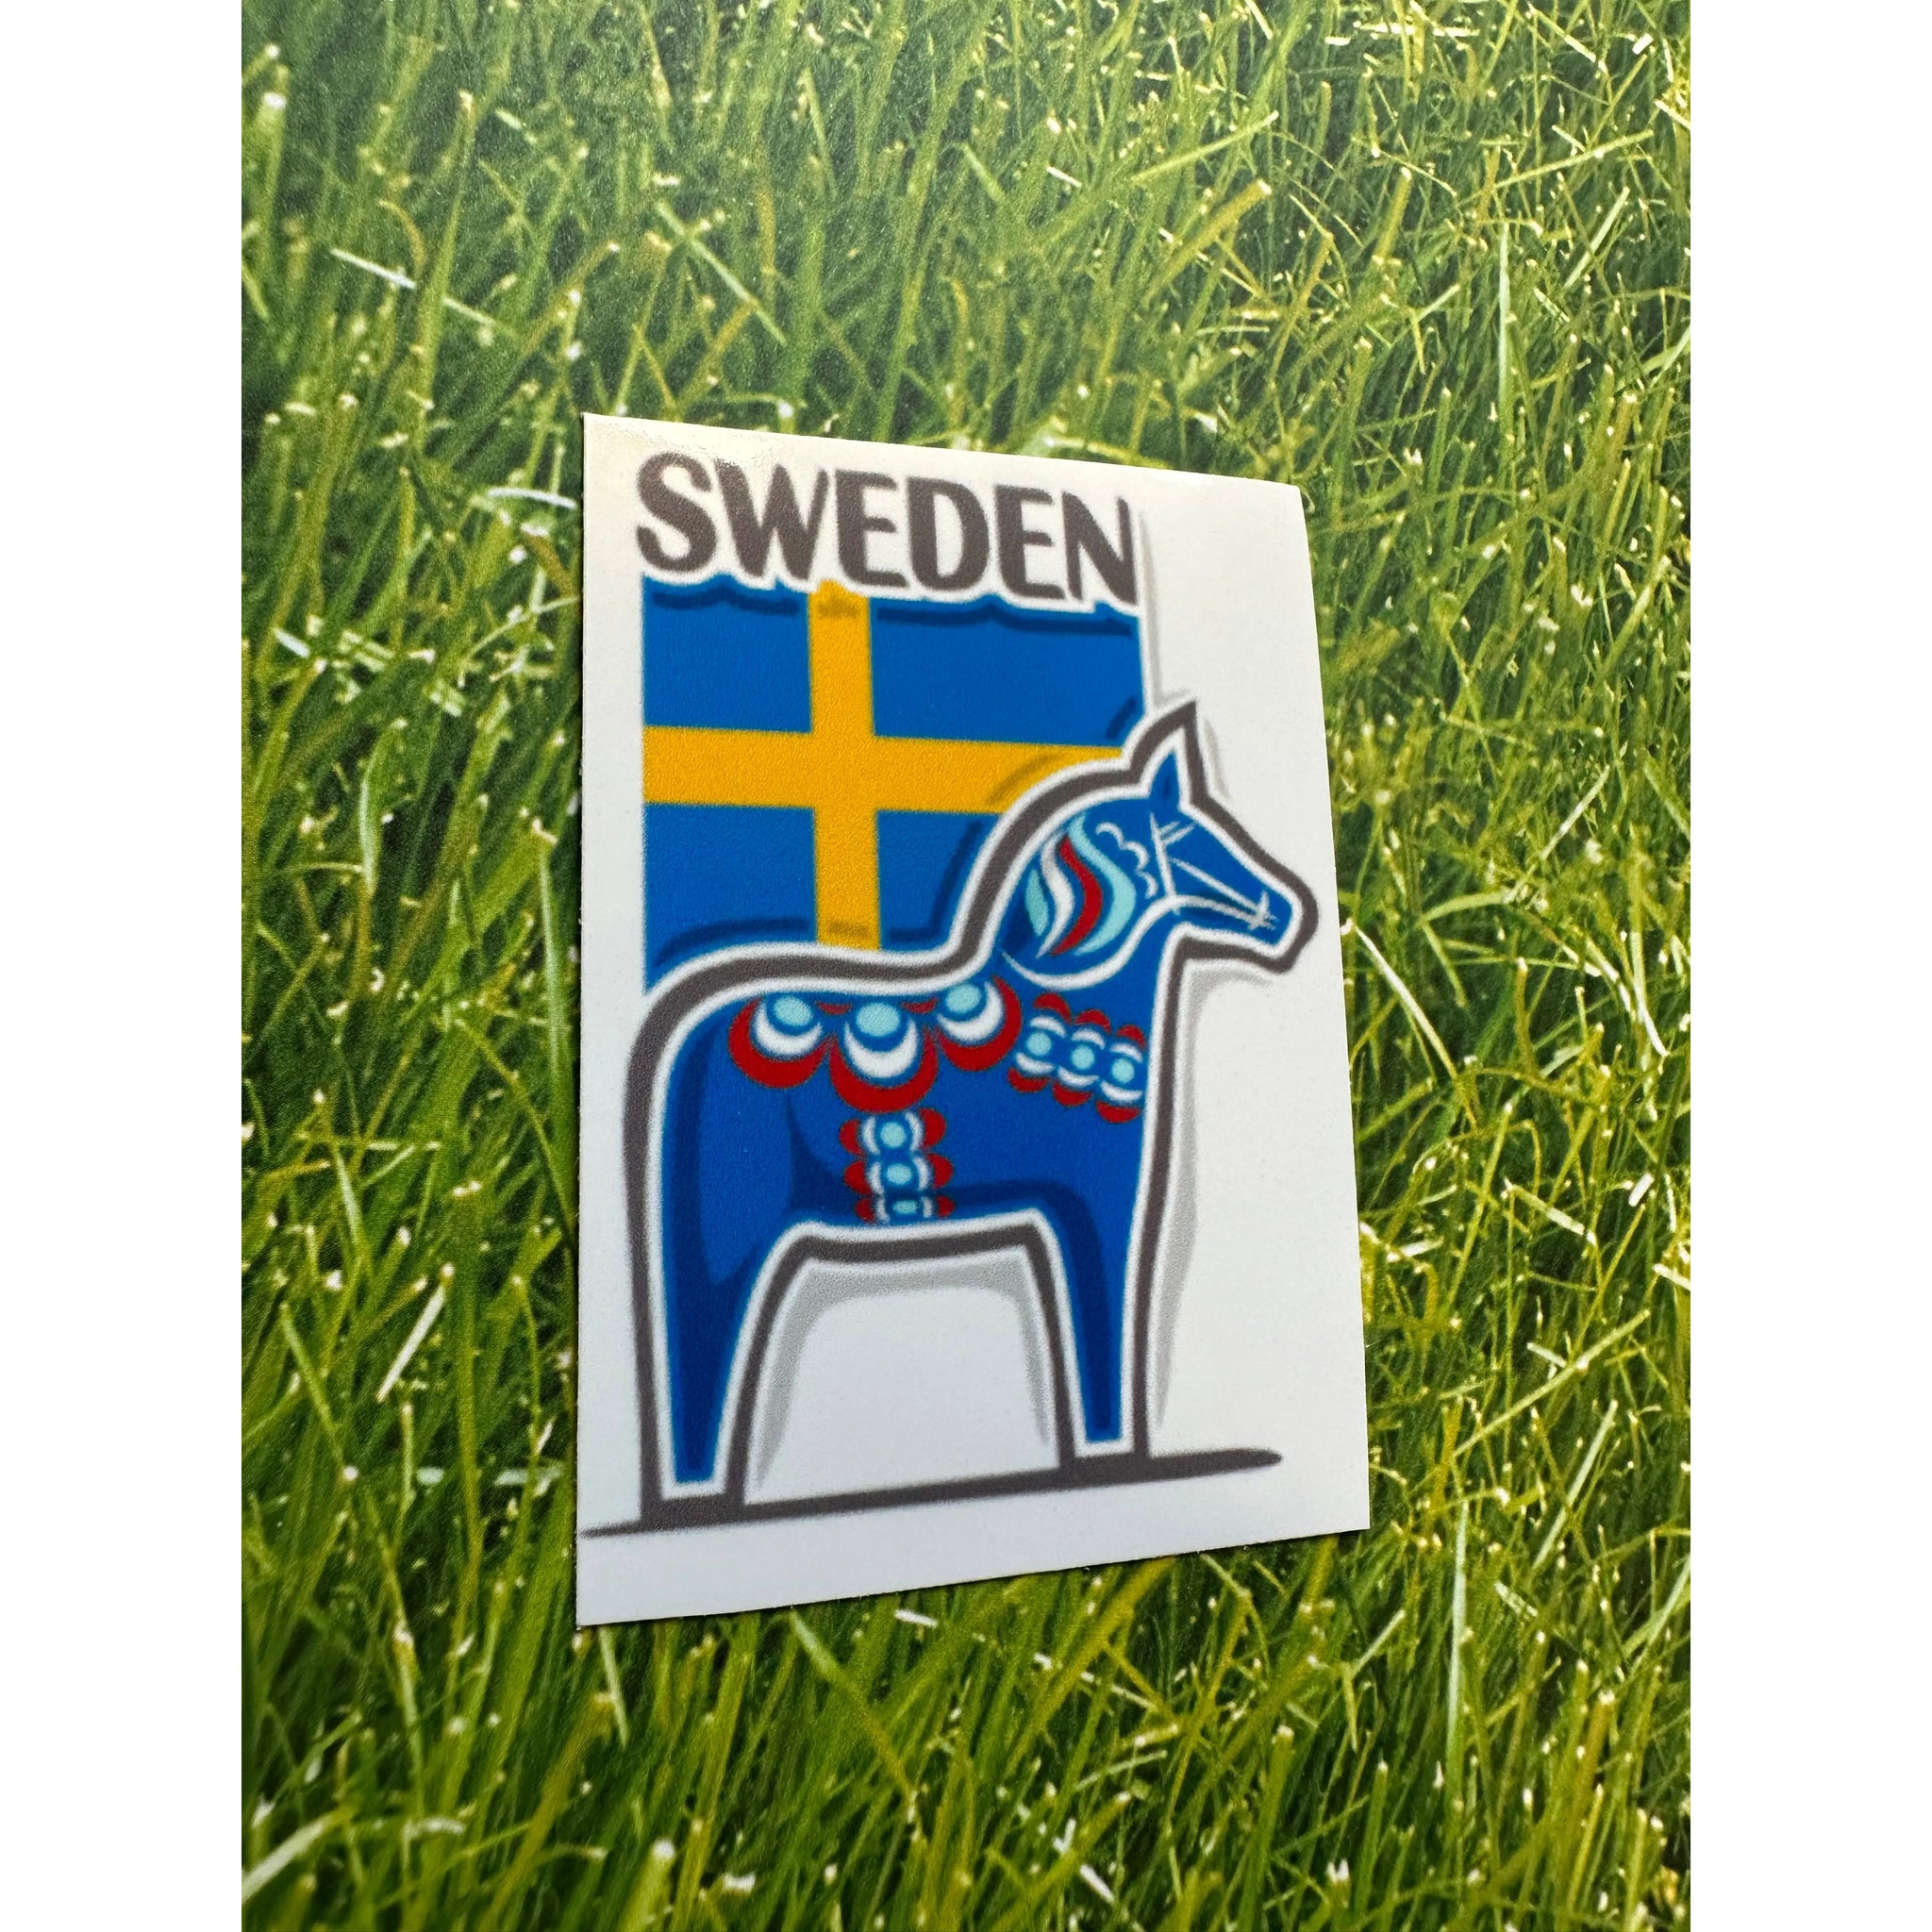 Sweden Vinyl Decal Sticker - The European Gift Store